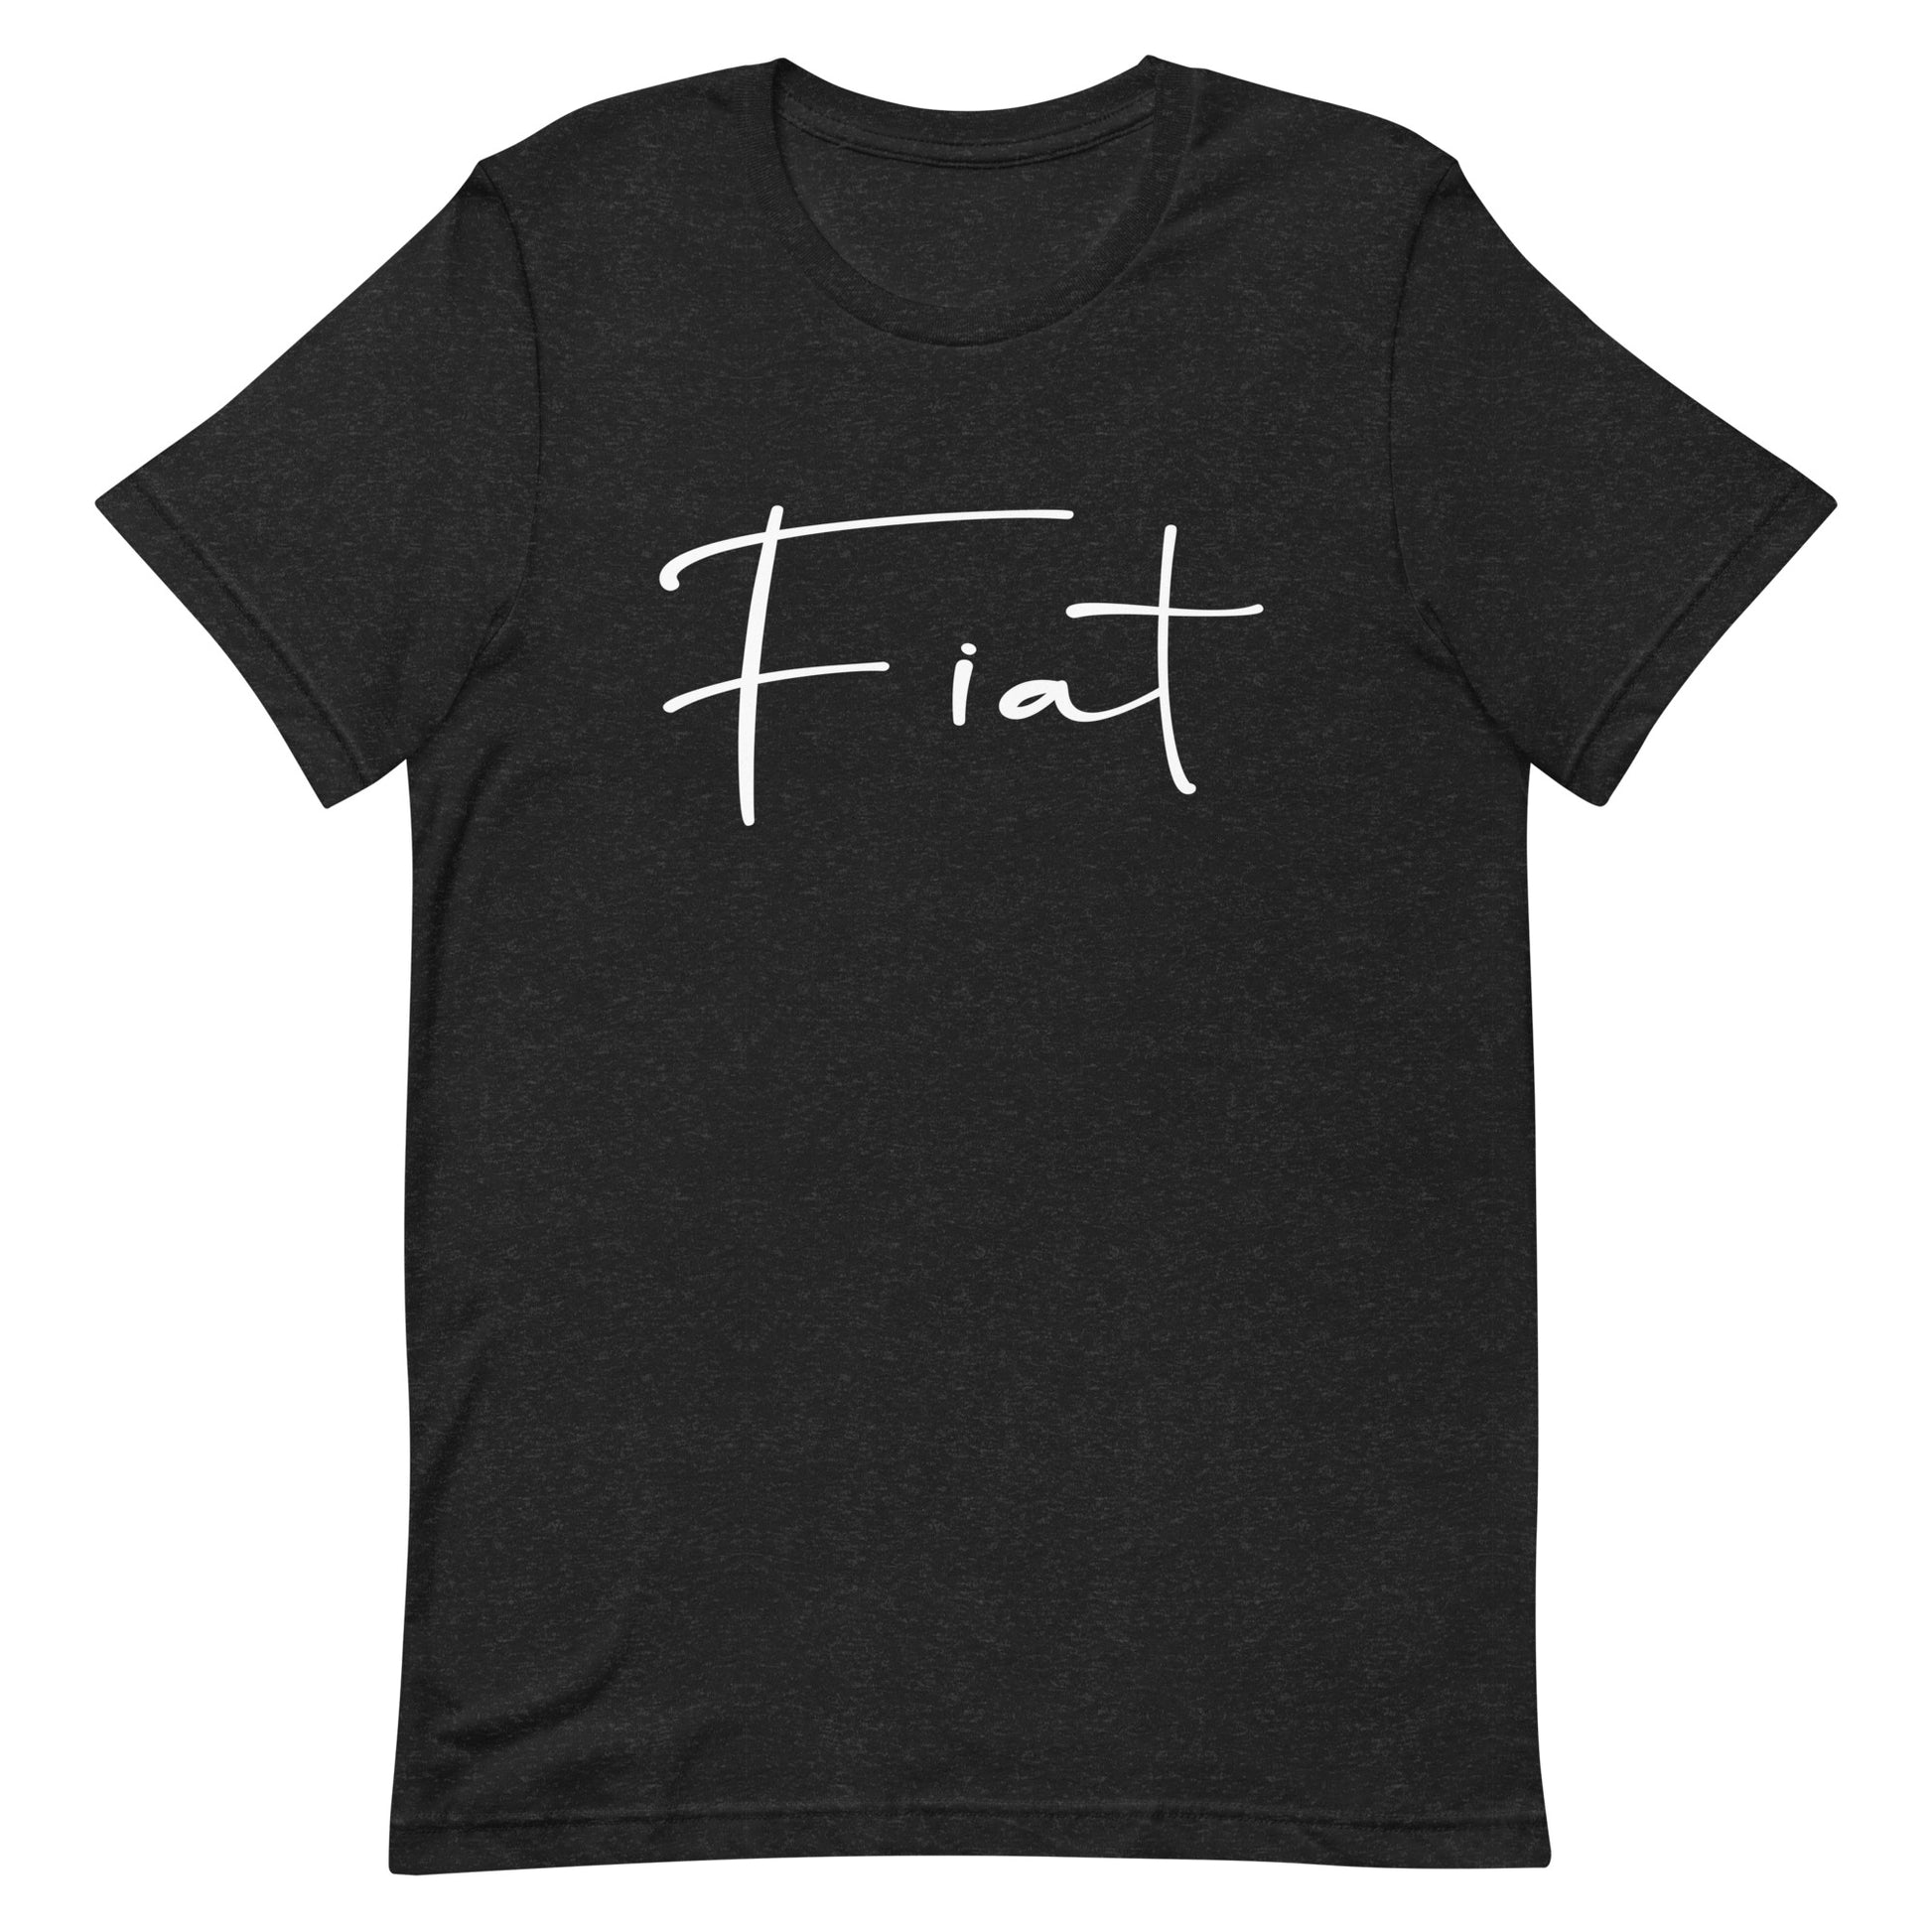 Fiat T-shirt Black Heather